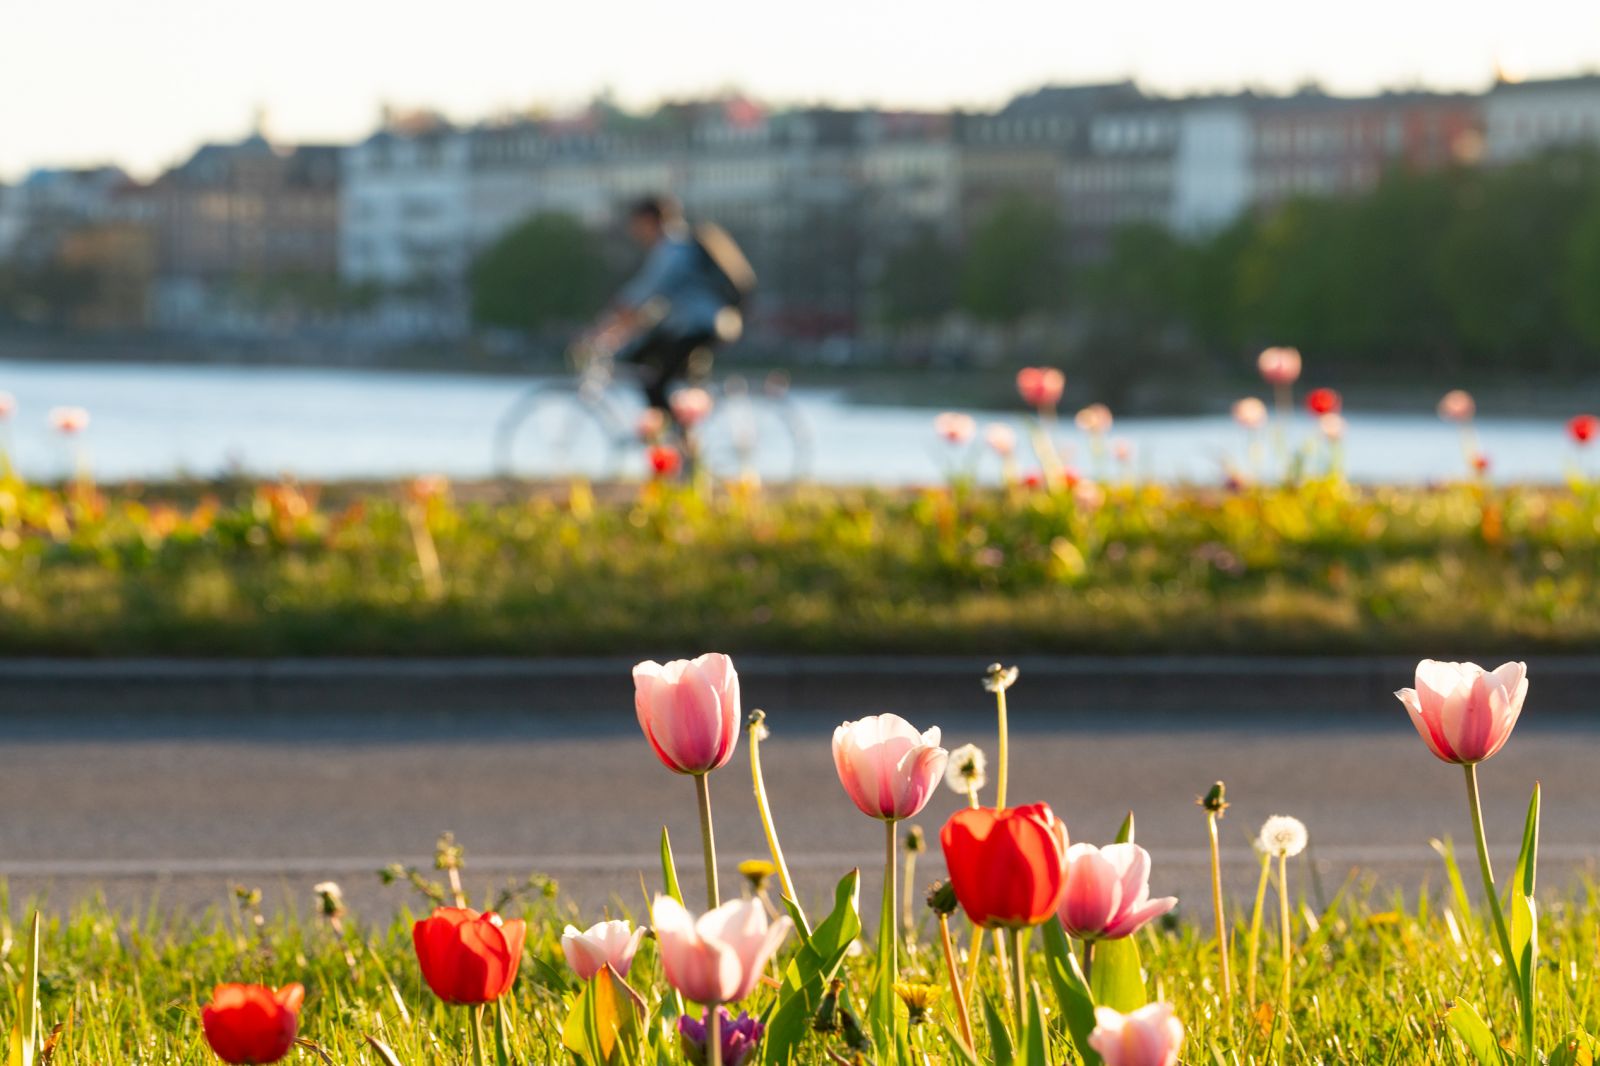 Spring in Copenhagen